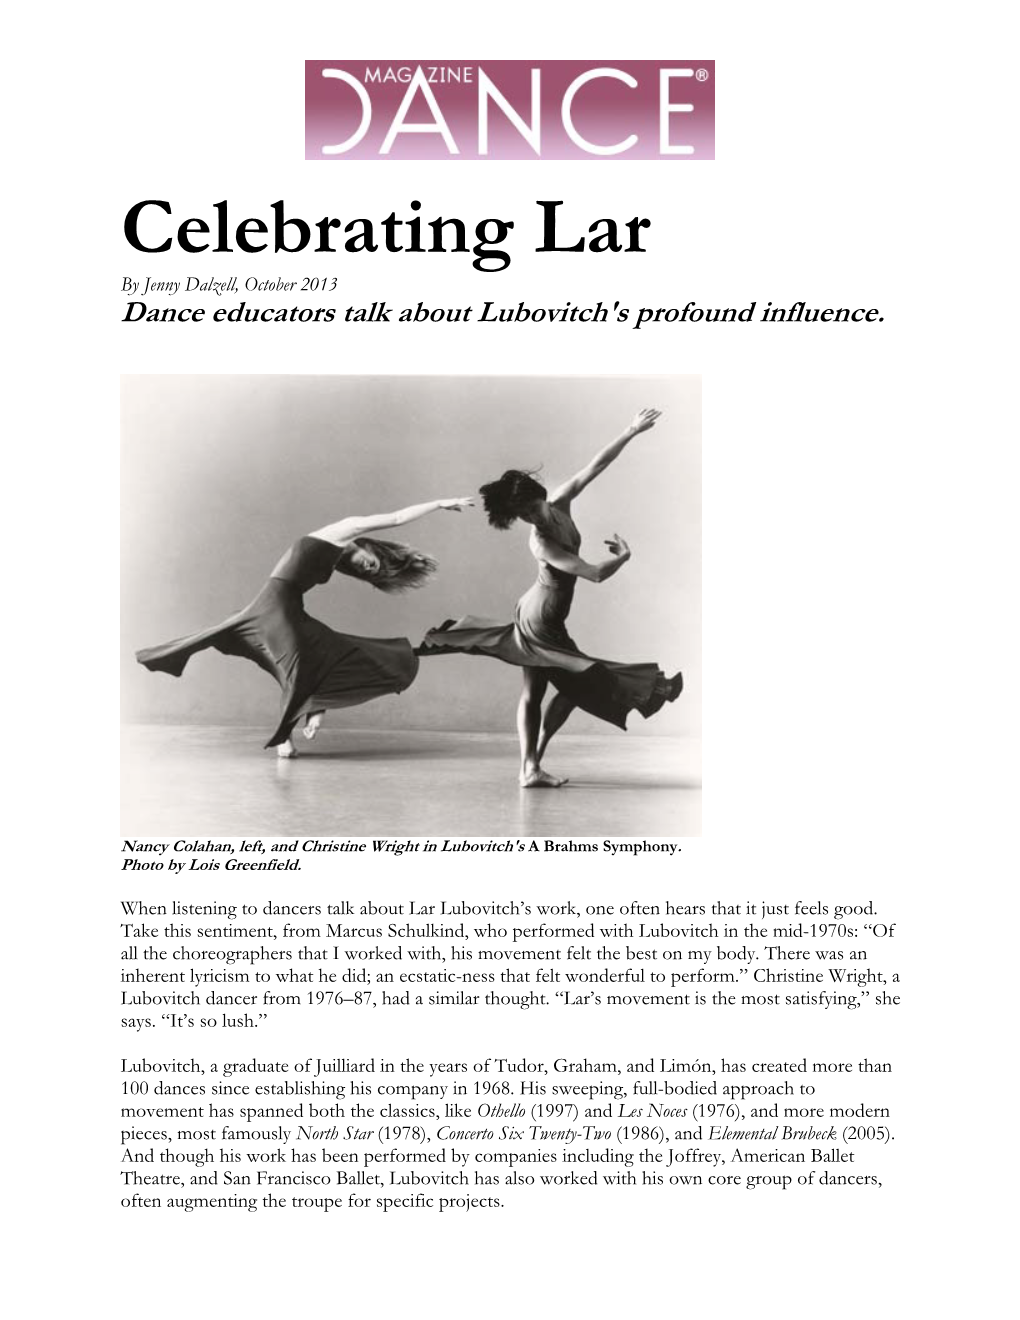 "Celebrating Lar"